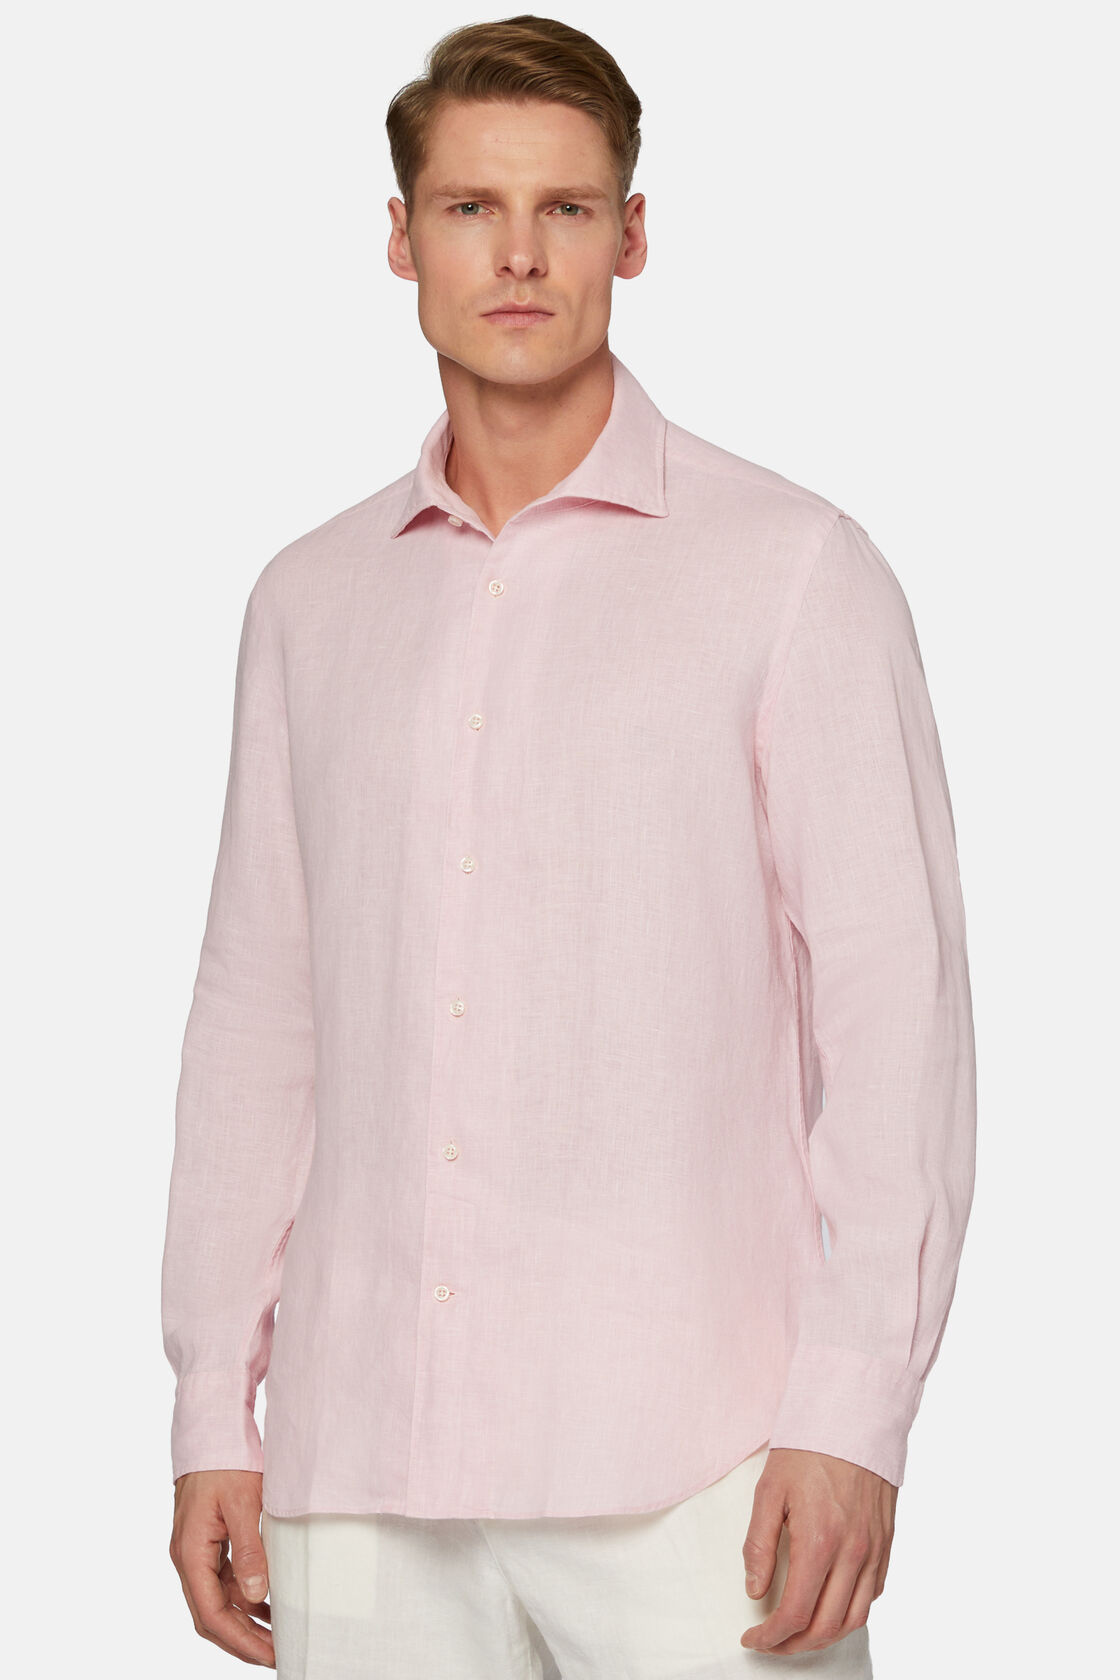 Różowa koszula lniana, klasyczny fason, Pink, hi-res